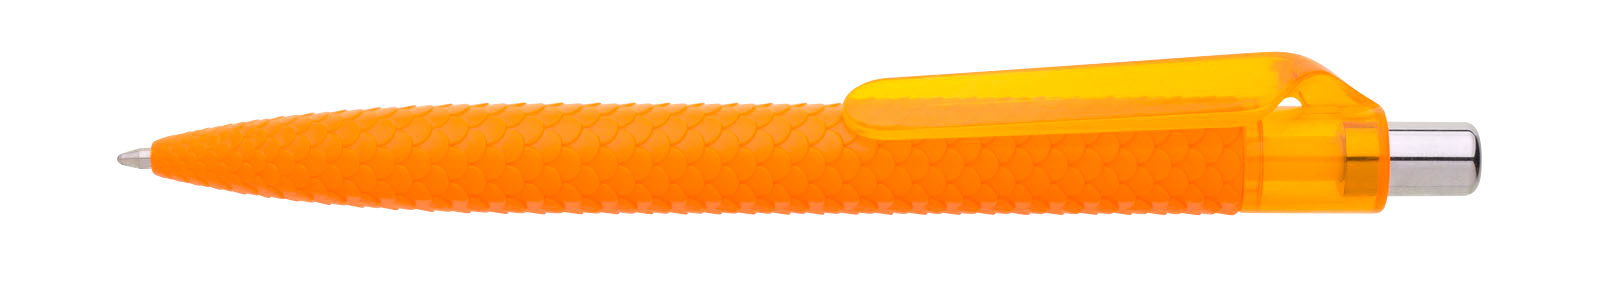 Propiska plast PANGO, oranžová